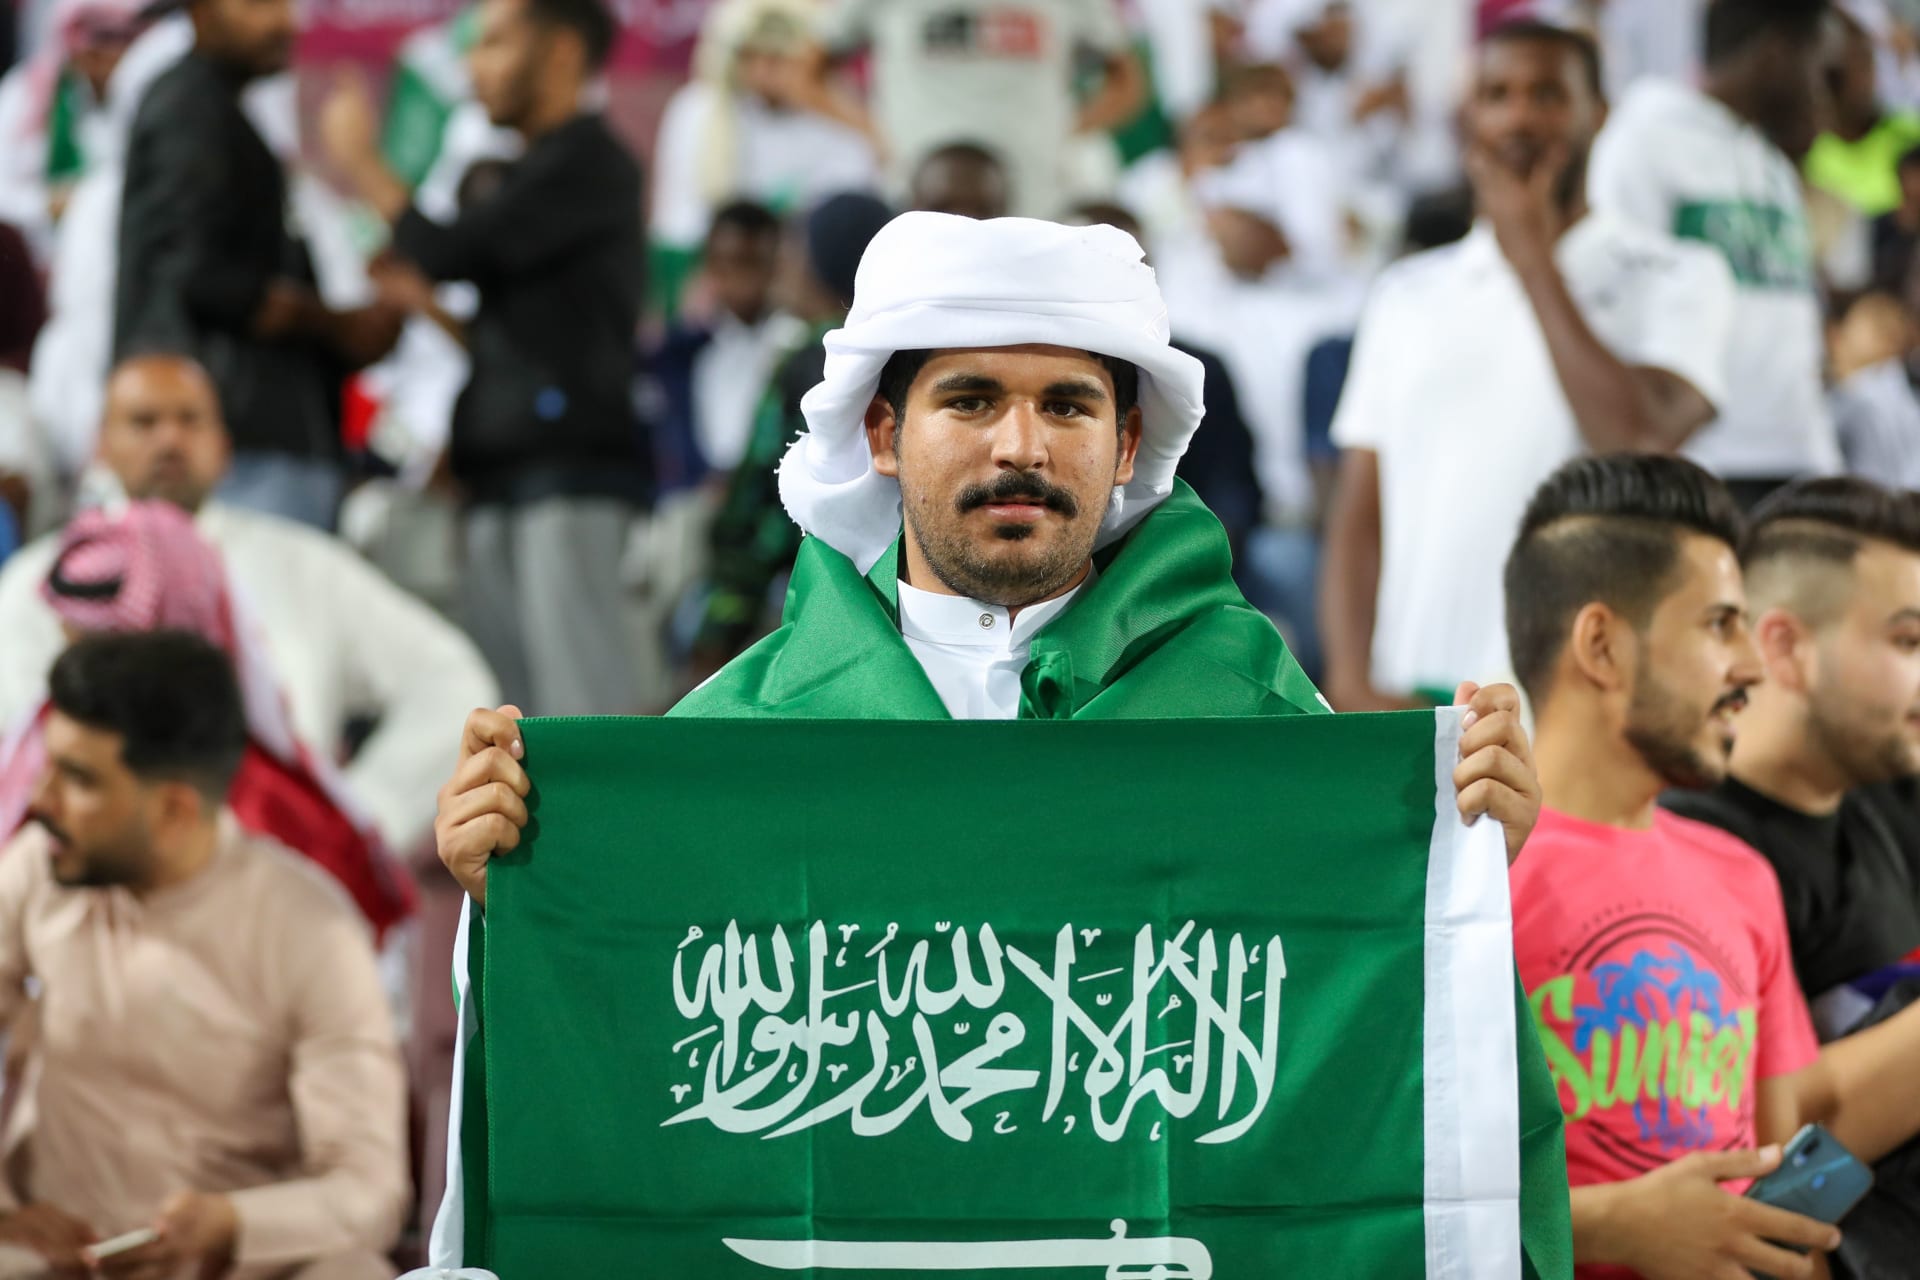 أحد مشجعي المنتخب السعودي لكرة القدم يرفع علم بلاده في منافسات بطولة الخليج الأخيرة